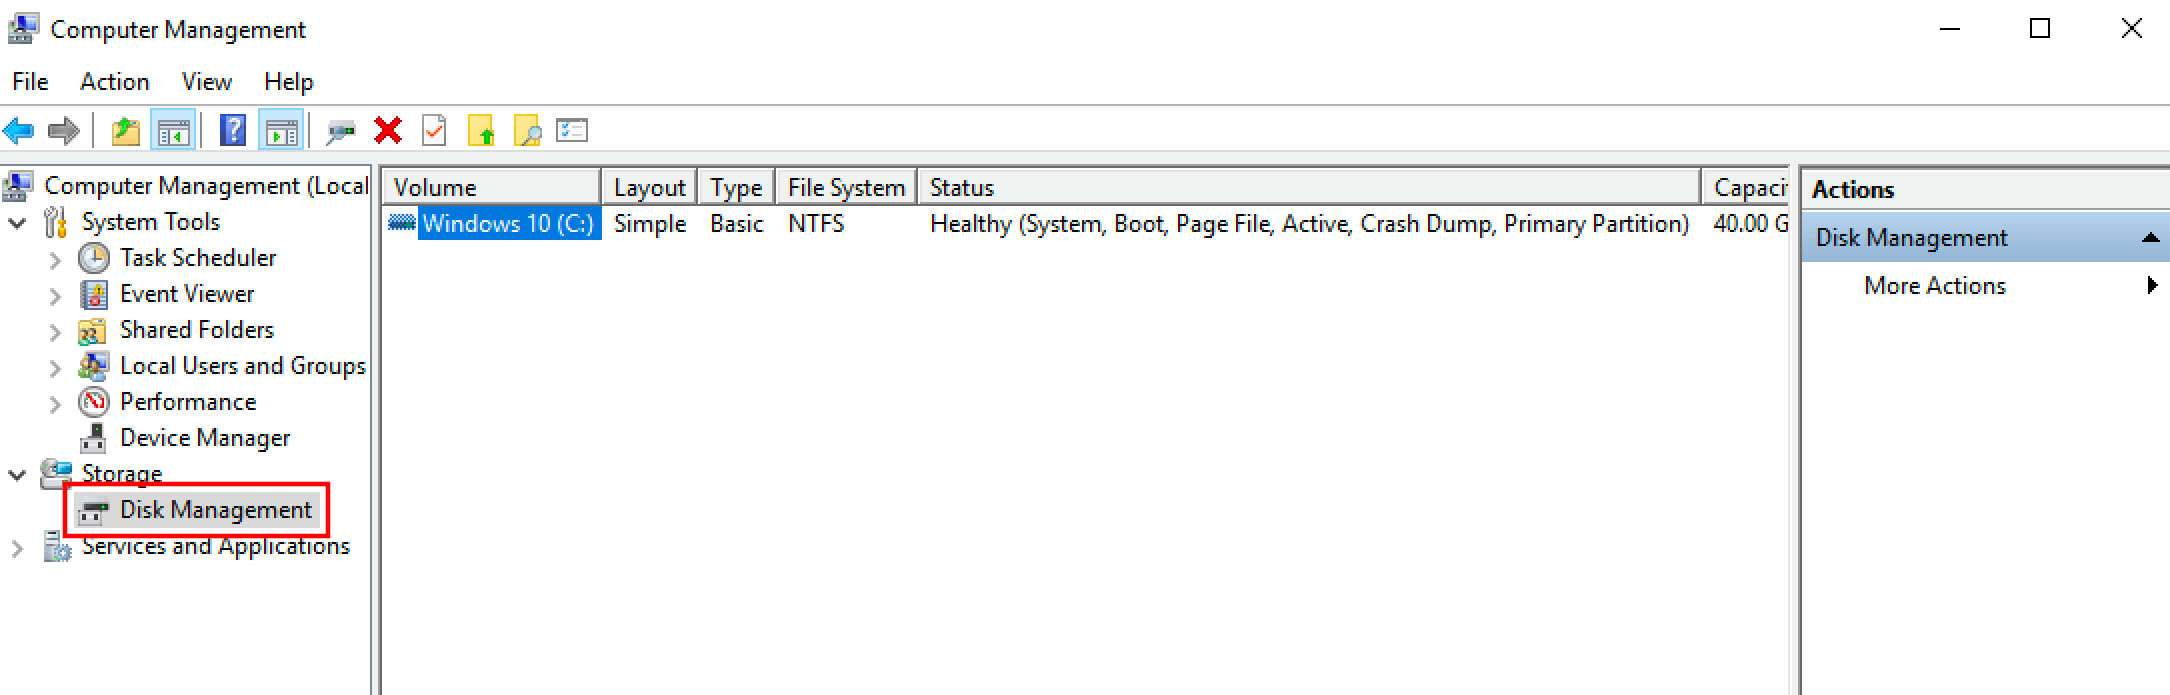 “Administración de discos” en la “Administración de equipos” de Windows 10